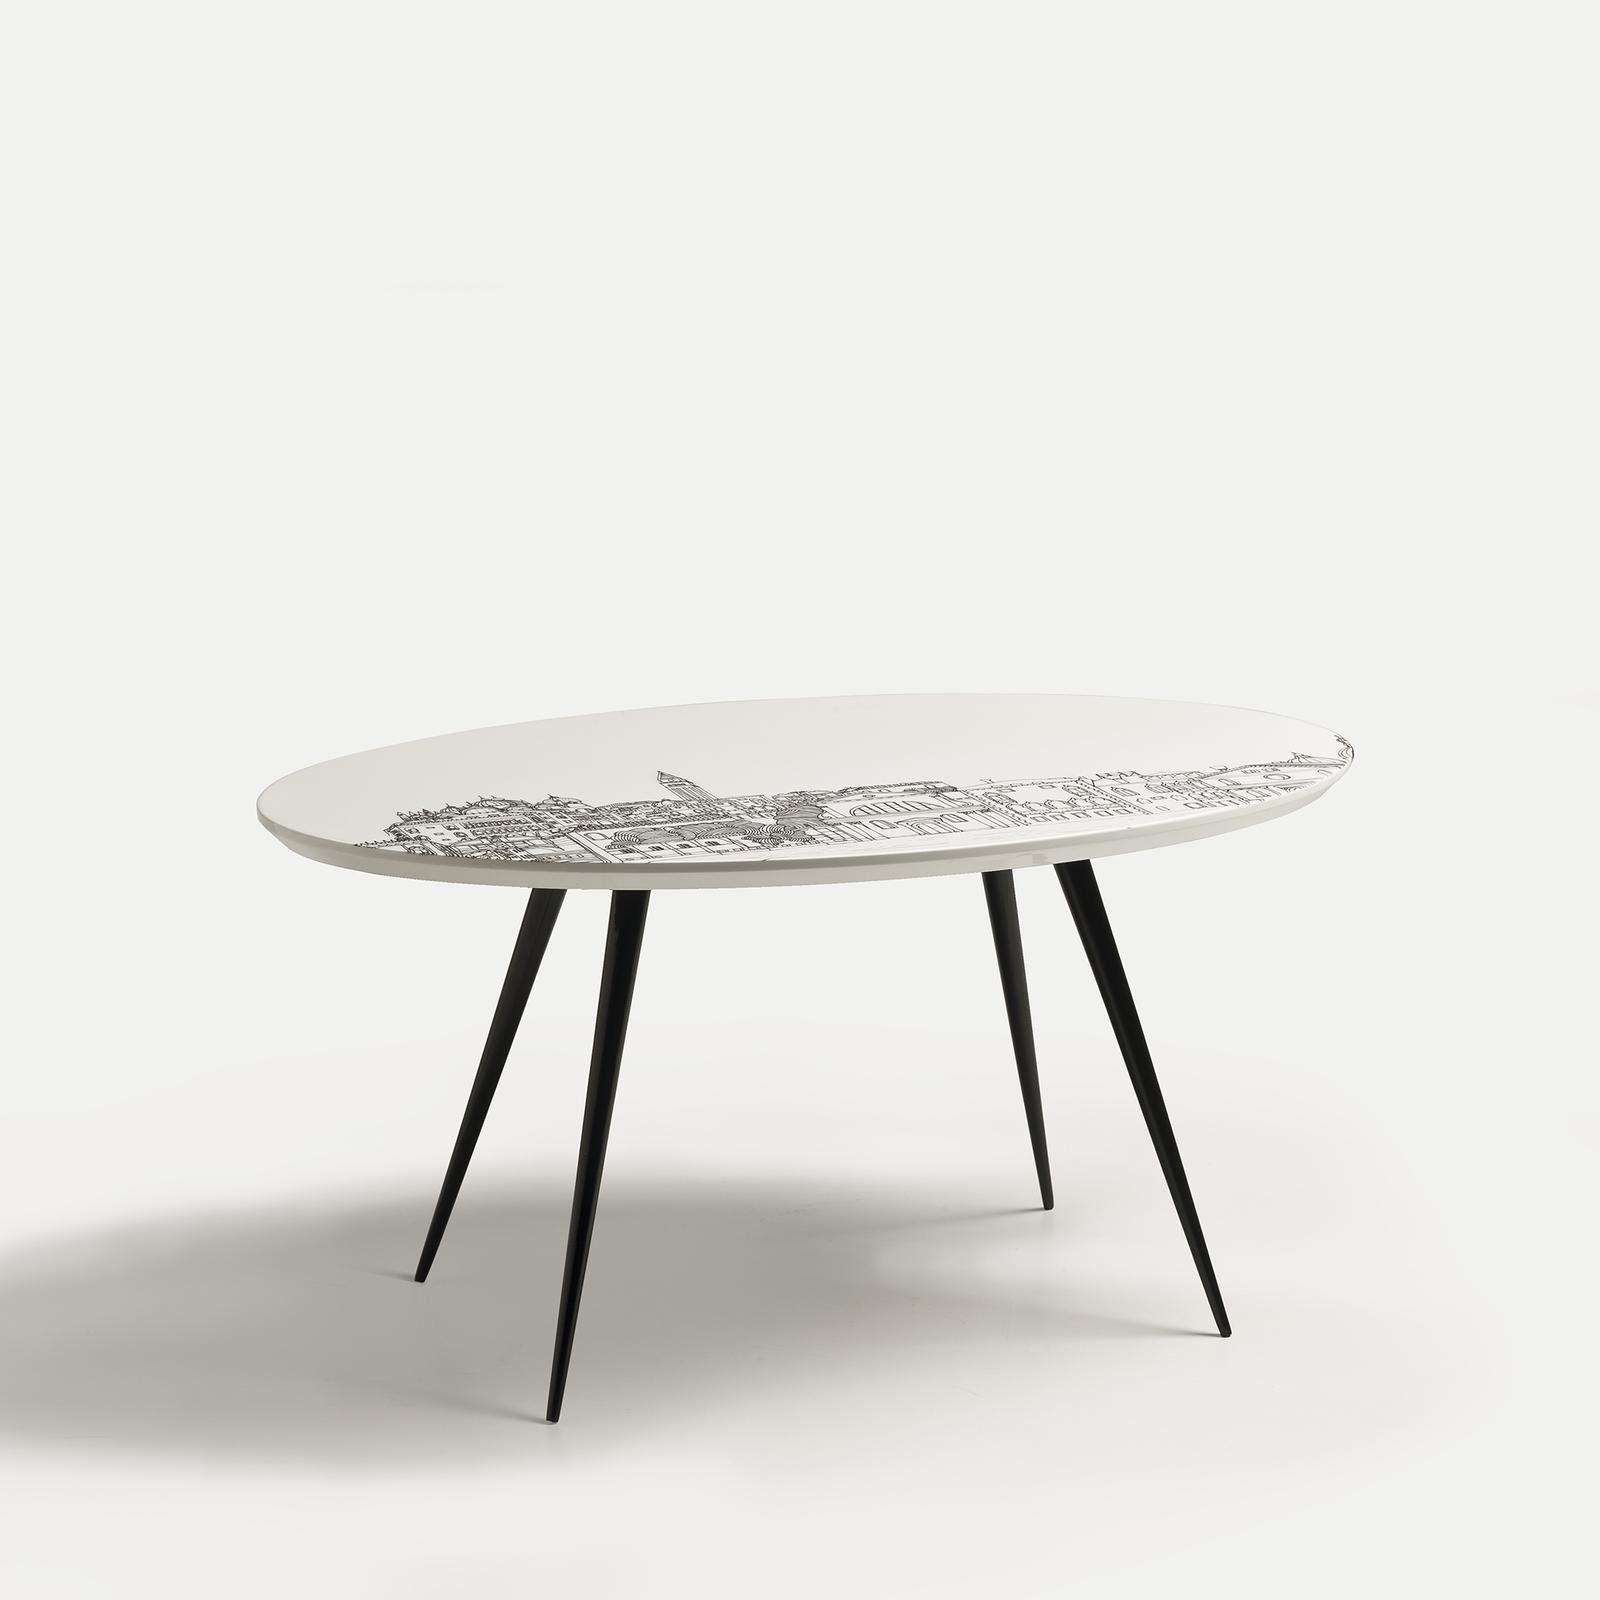 Dieser moderne Couchtisch ist Teil der Venezia-Serie moderner Tische, die von Anna Sutor entworfen und von den venezianischen Landschaften mit ihrer ikonischen Architektur inspiriert wurden. Vier schlanke, schräge, schwarz lackierte Beine stützen